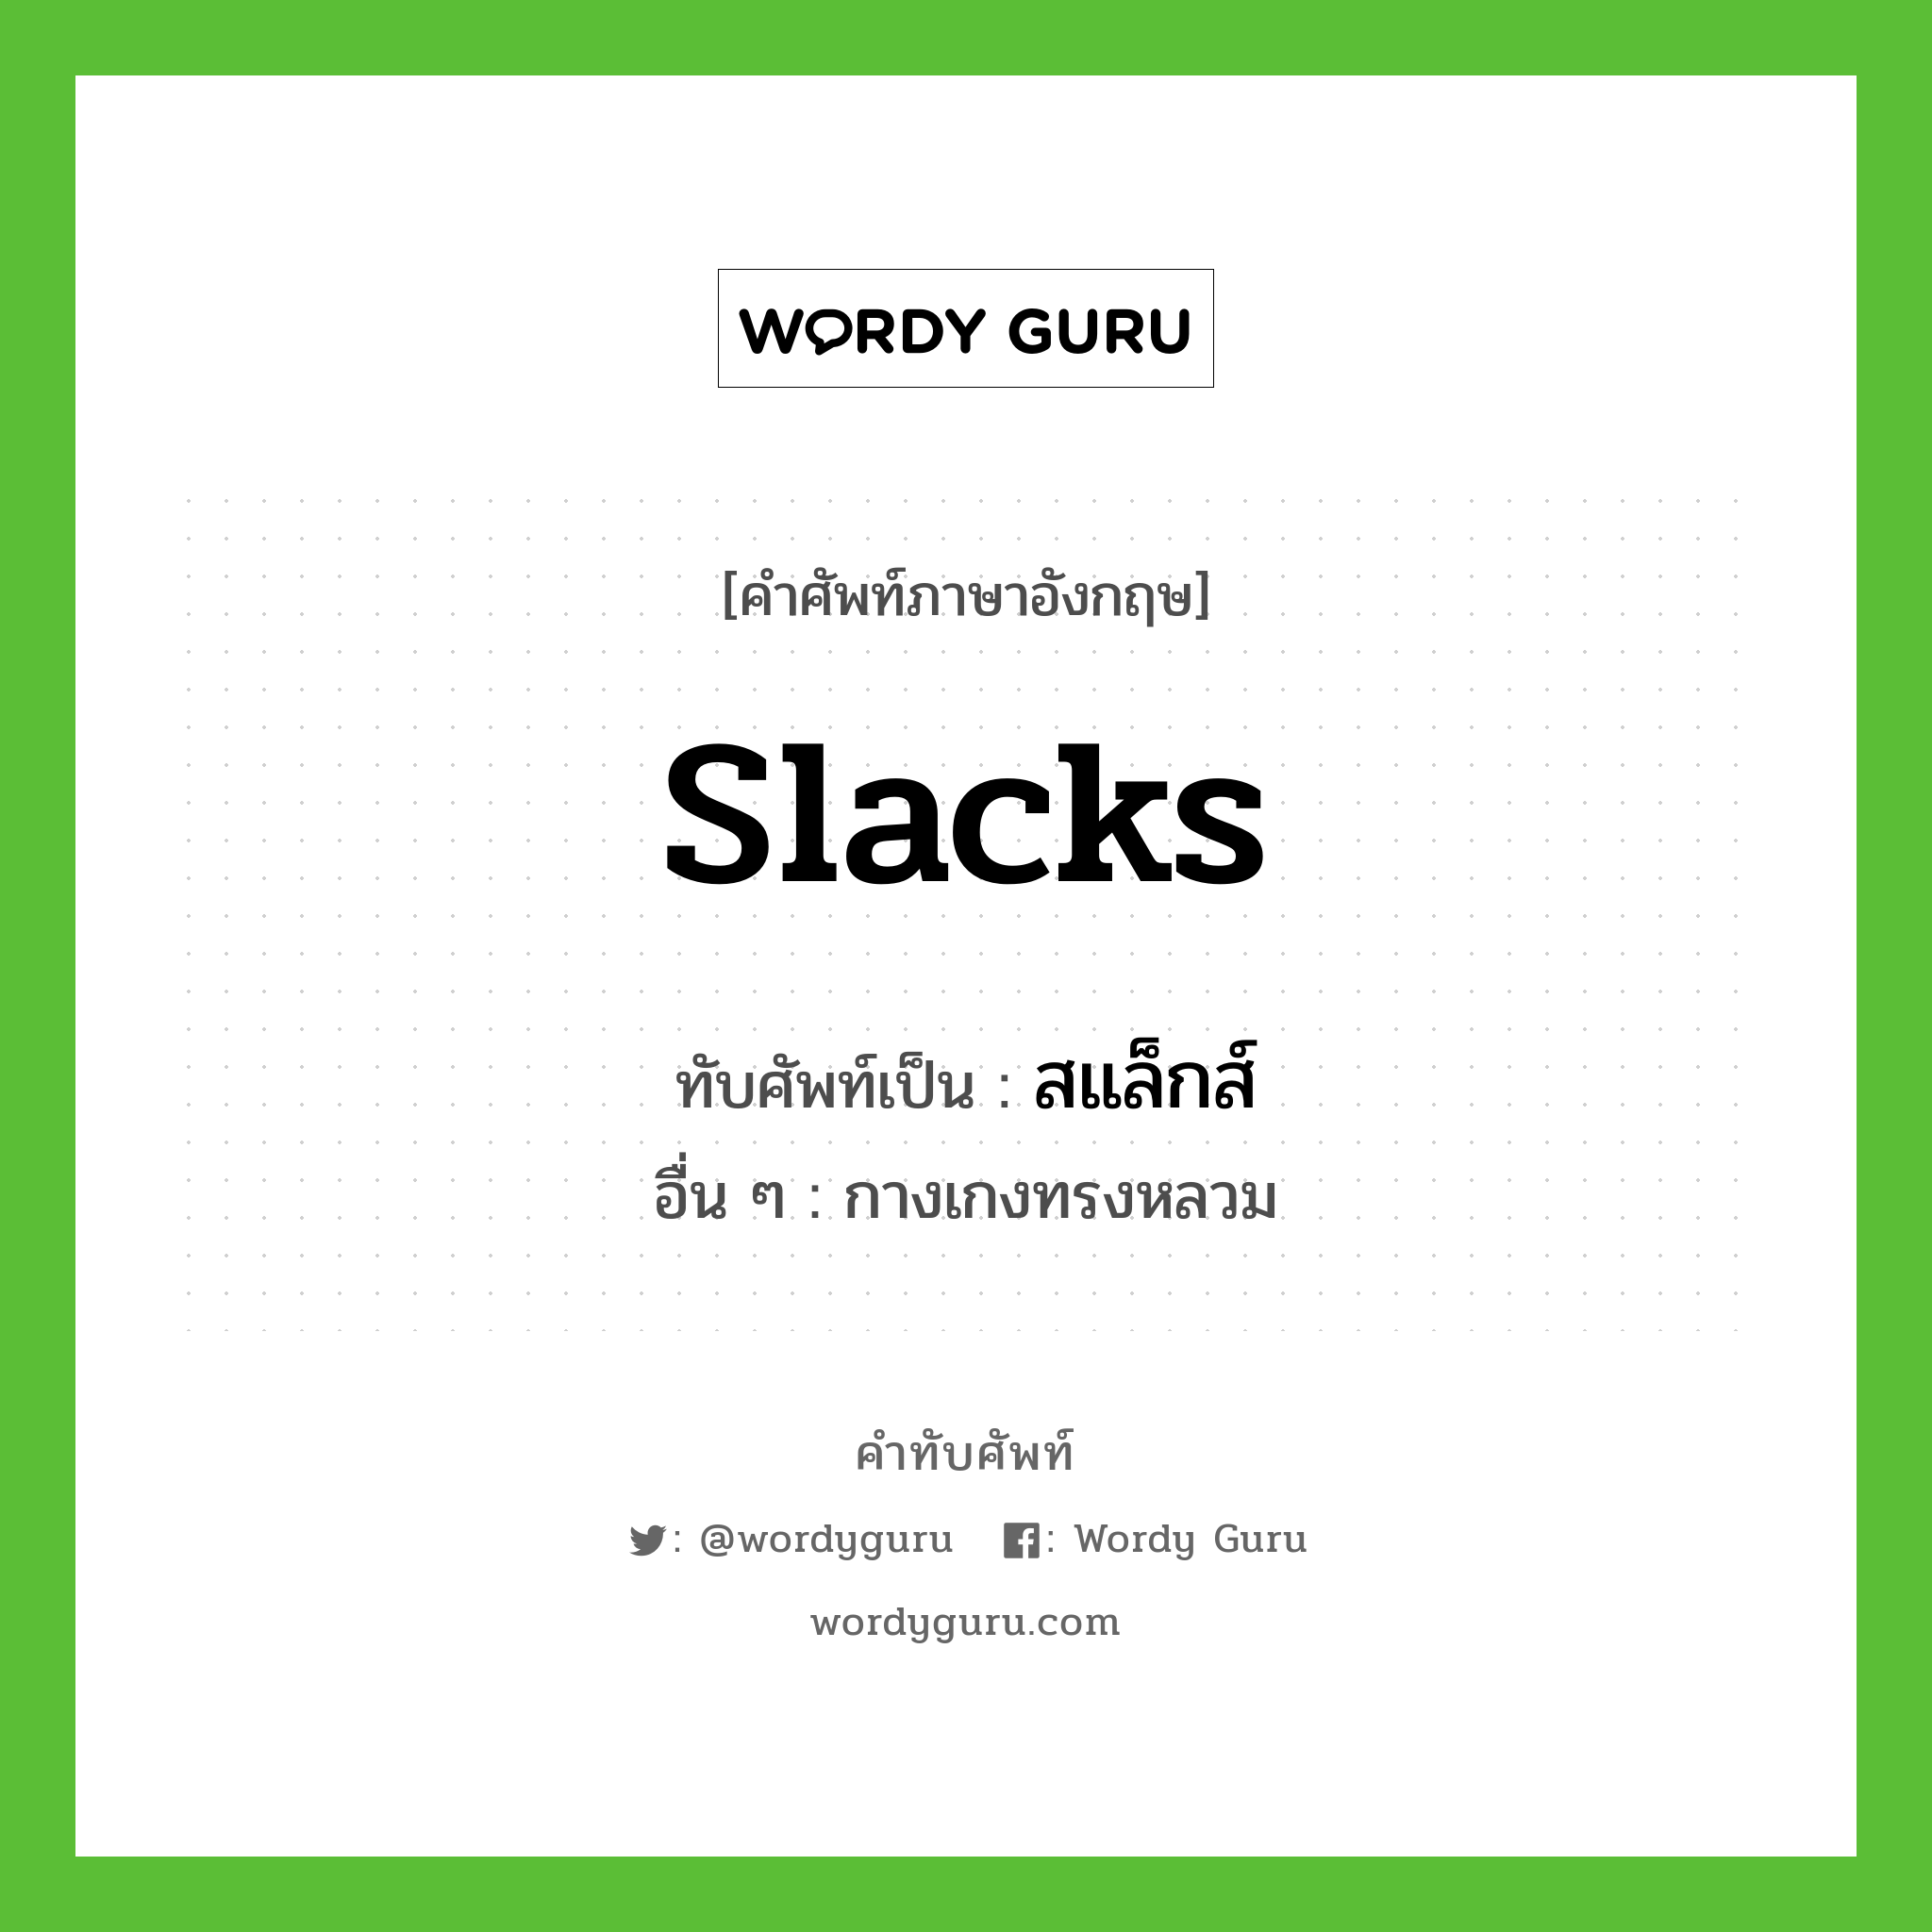 Slacks เขียนเป็นคำไทยว่าอะไร?, คำศัพท์ภาษาอังกฤษ Slacks ทับศัพท์เป็น สแล็กส์ อื่น ๆ กางเกงทรงหลวม